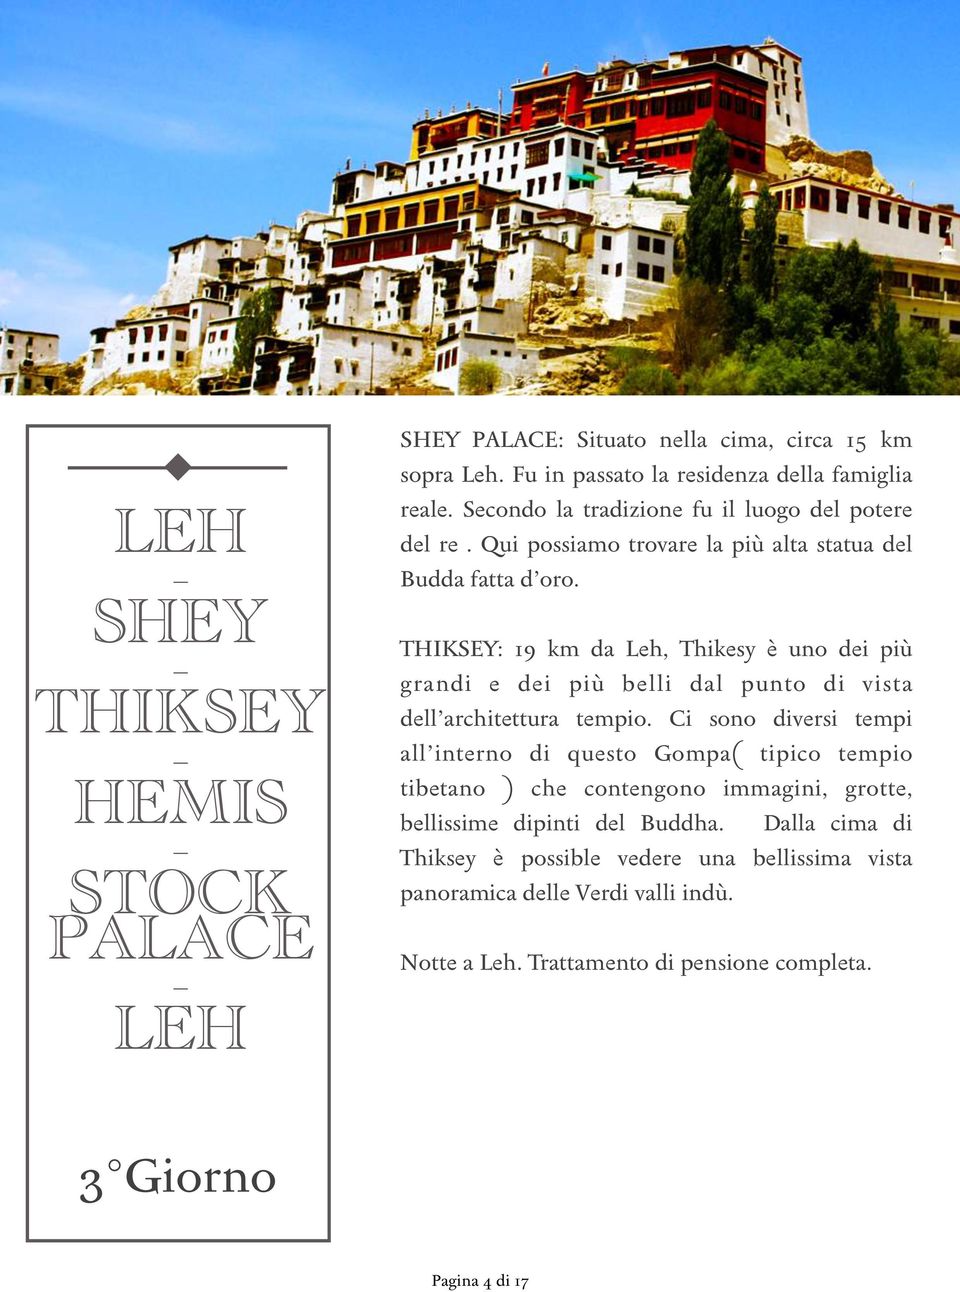 THIKSEY: 19 km da Leh, Thikesy è uno dei più grandi e dei più belli dal punto di vista dell architettura tempio.